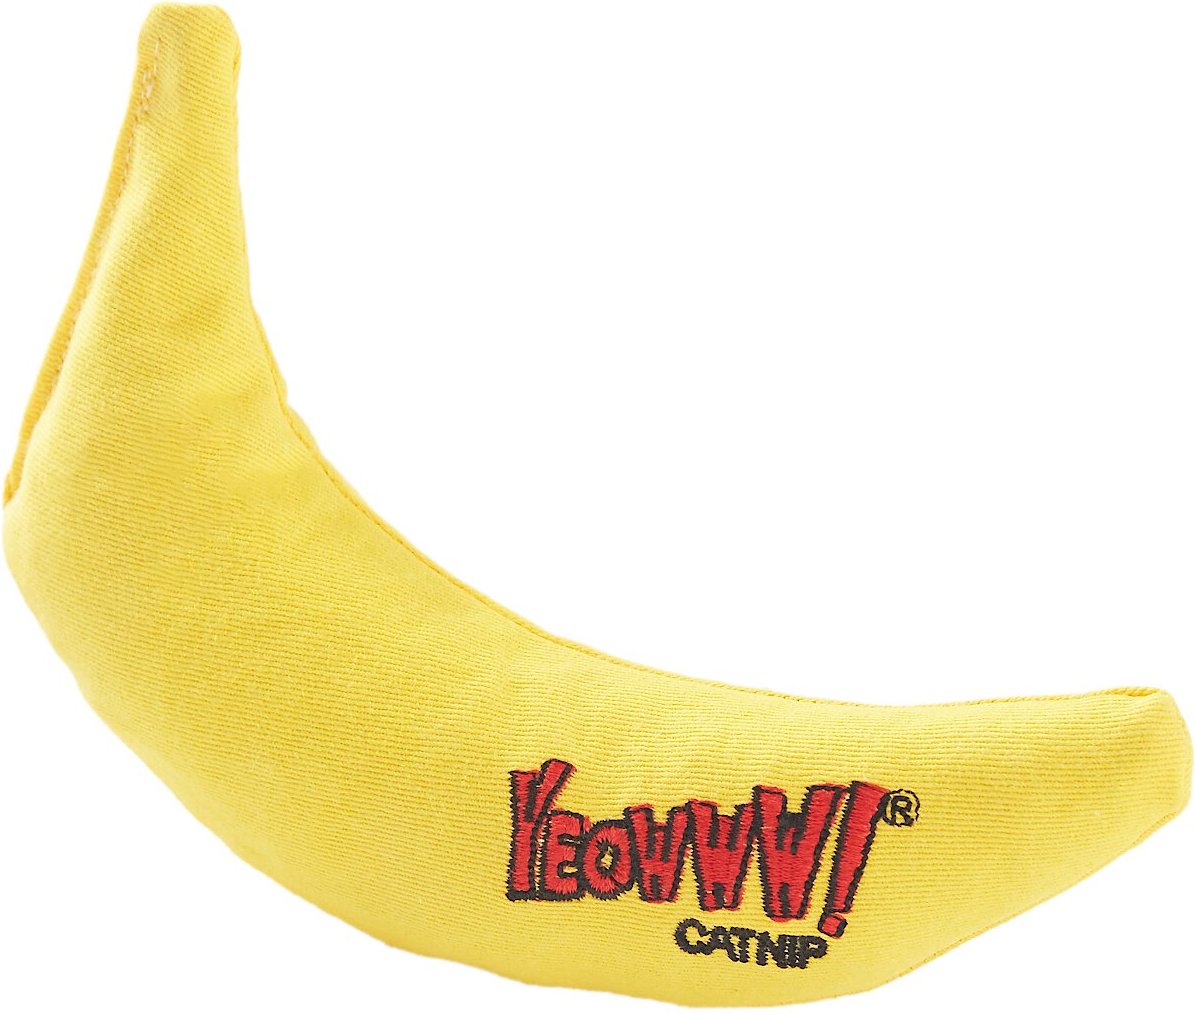 Мягкая игрушка банан. Банана кат. Желтый бананчик игрушка. Кошка бананчик. Кошкам можно банан